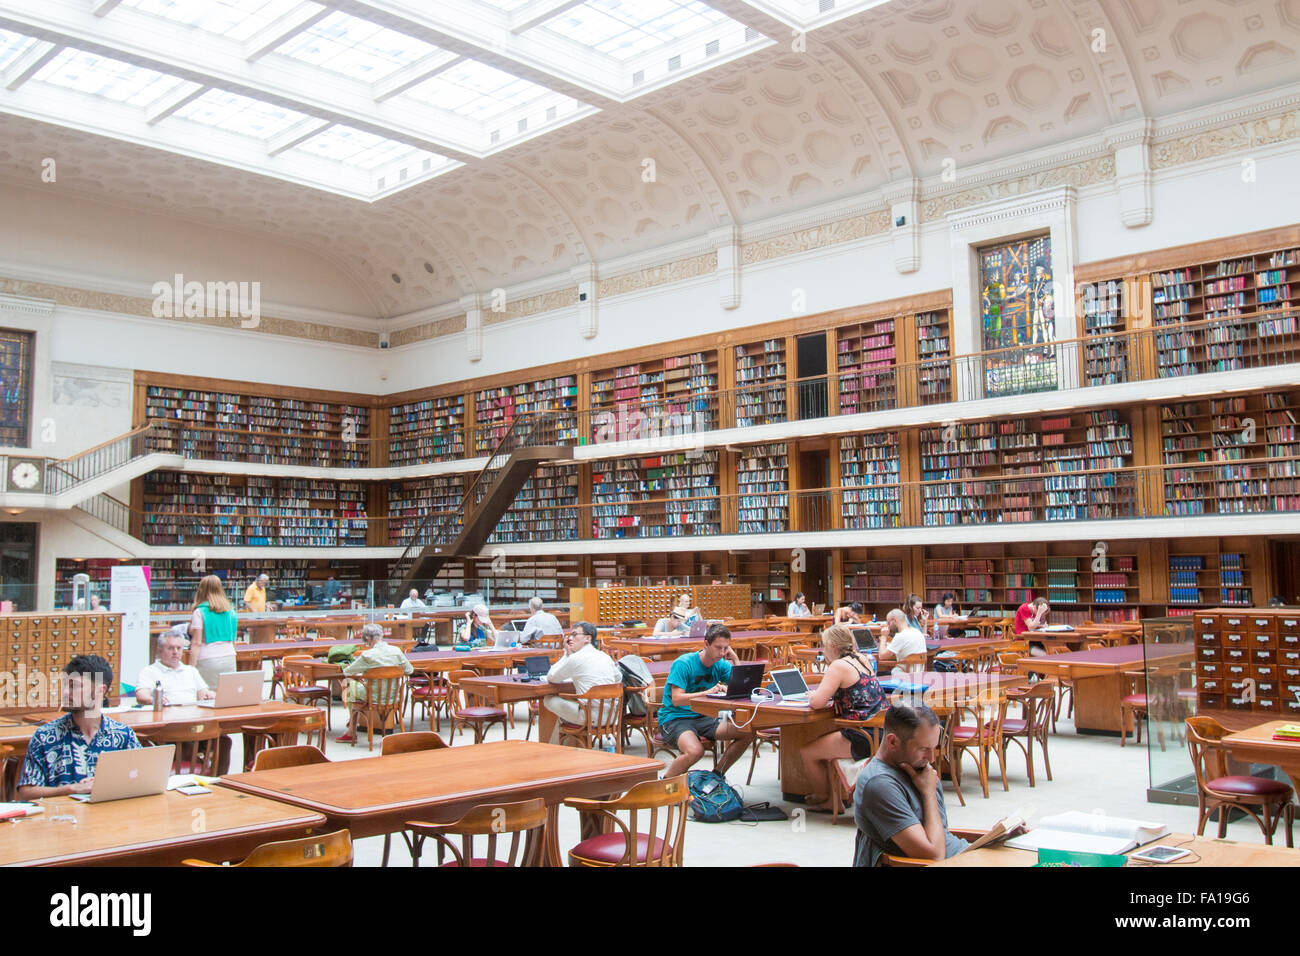 La Biblioteca Estatal de Nueva Gales del Sur, en la calle Macquarie, Sydney, Australia fotos interiores de las principales salas de la biblioteca y el salón Foto de stock